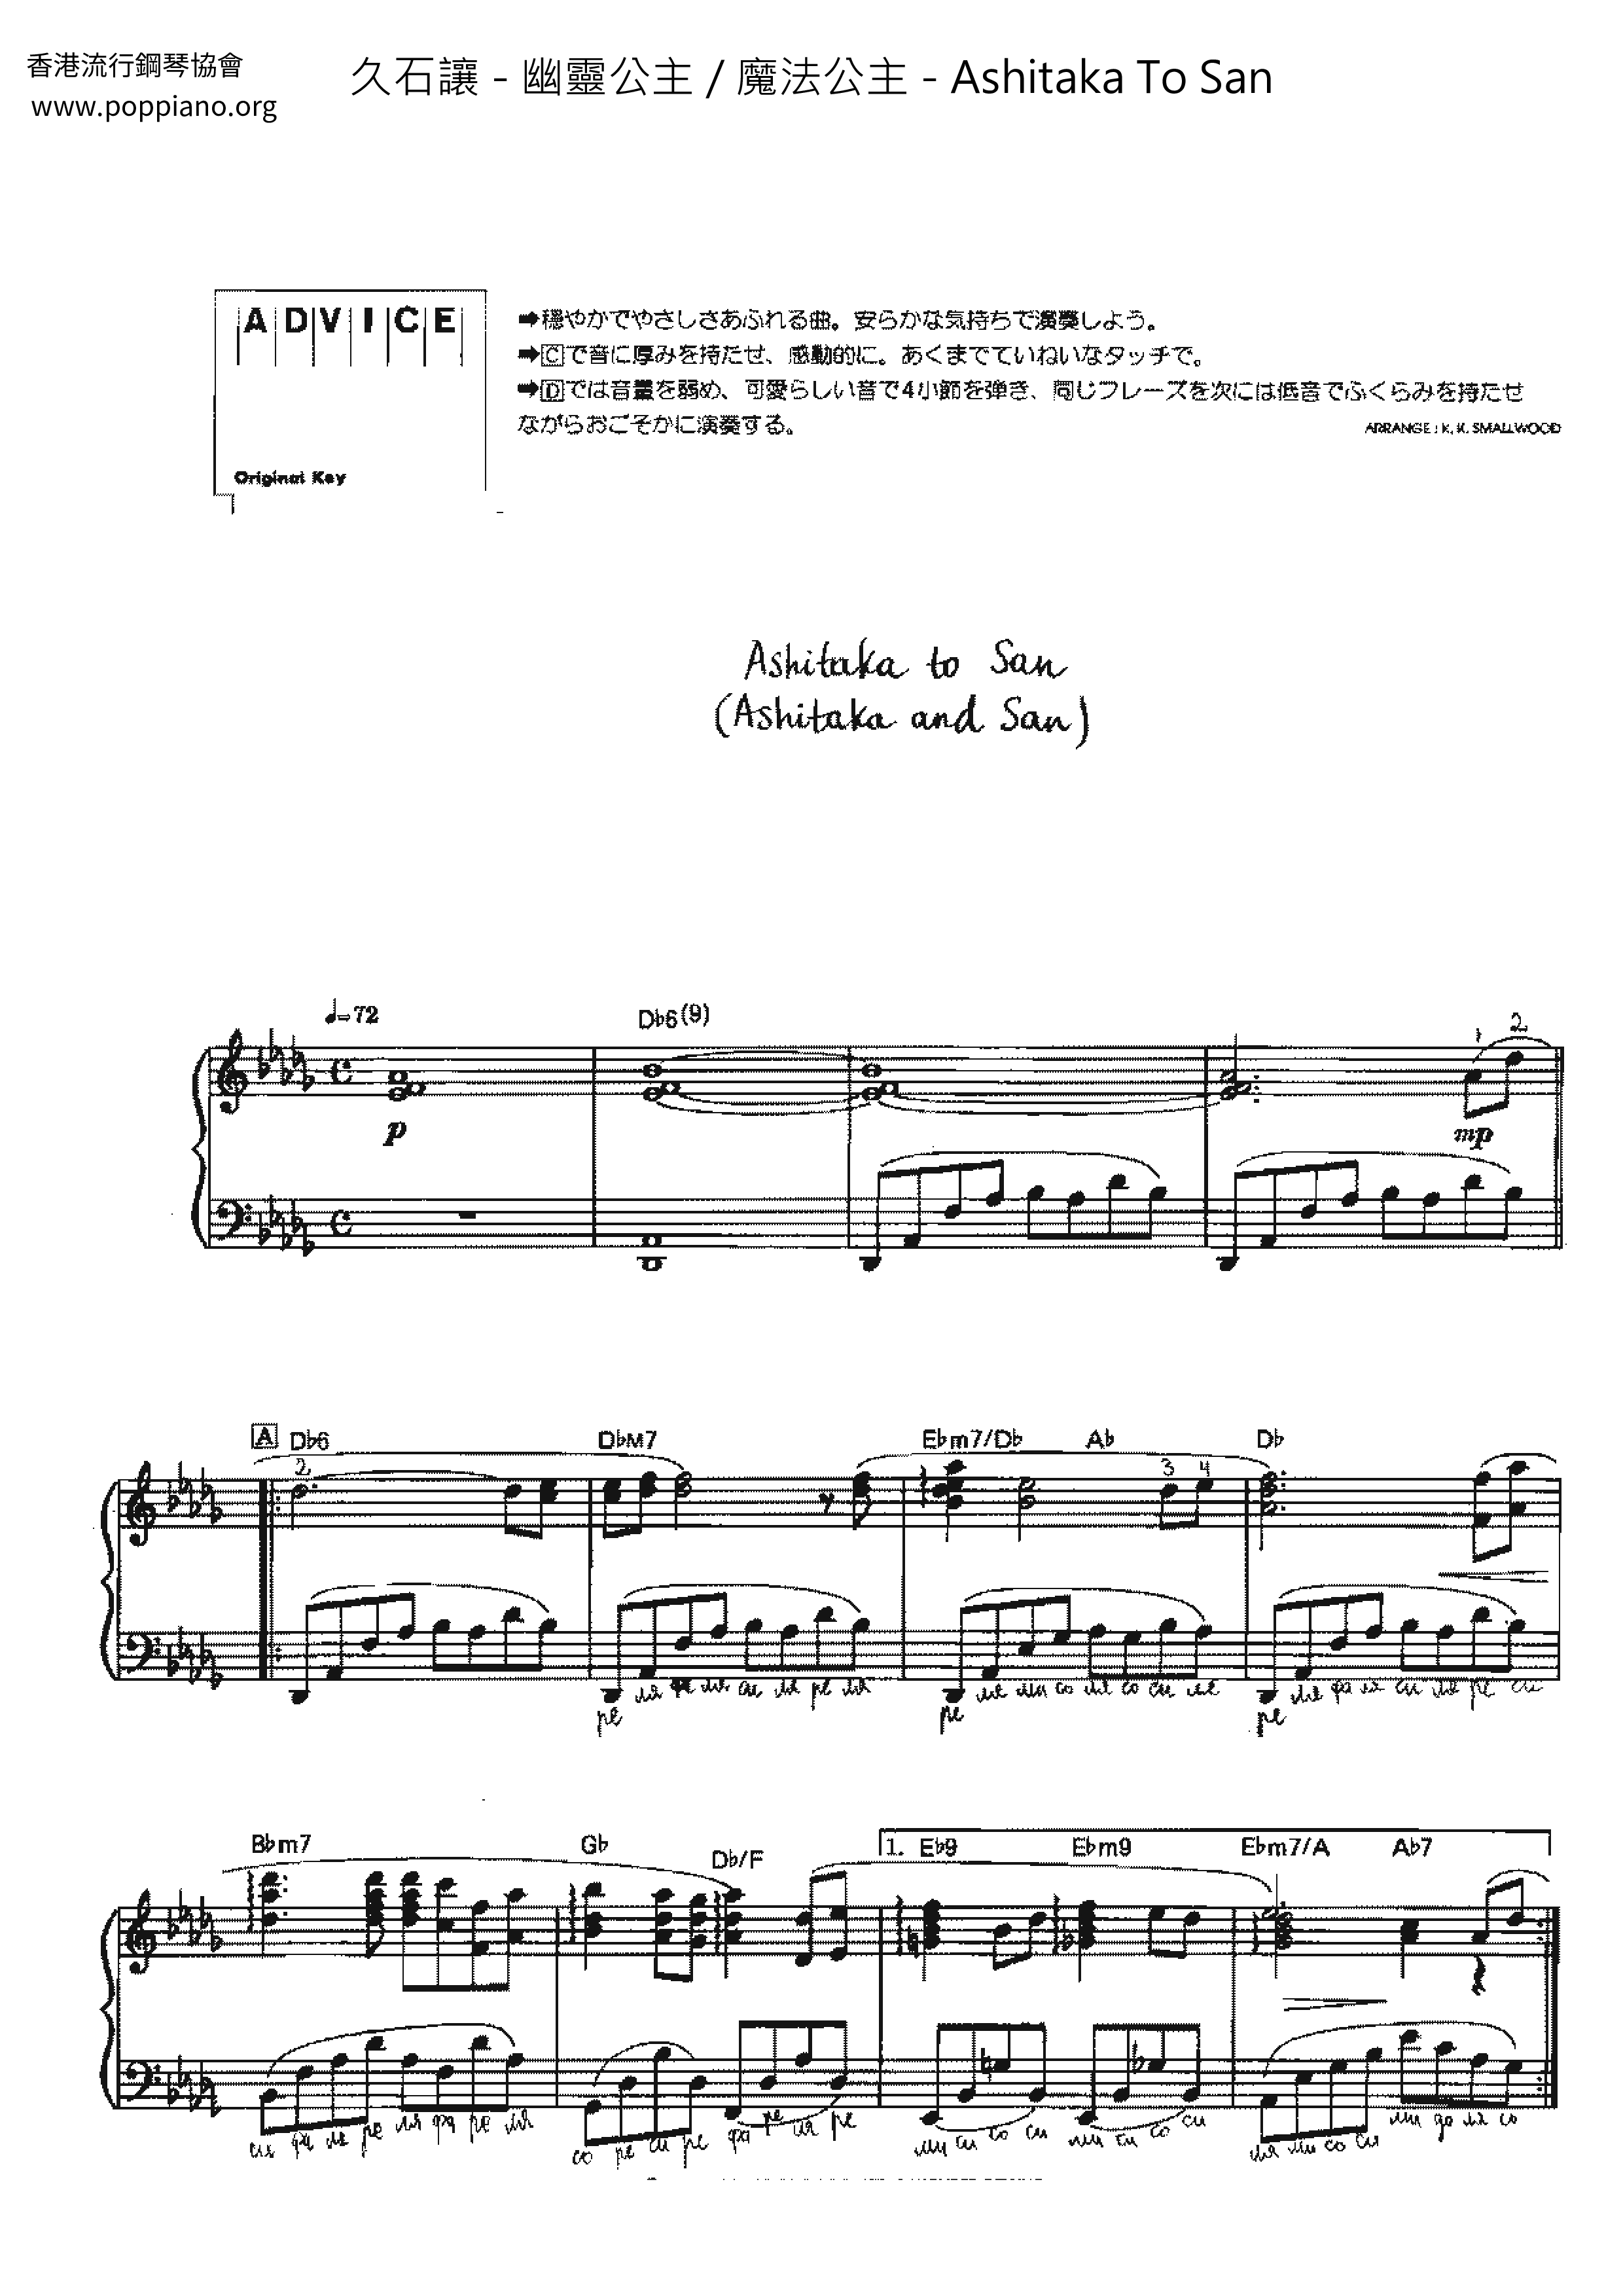 Princess Mononoke-Ashitaka To San Score